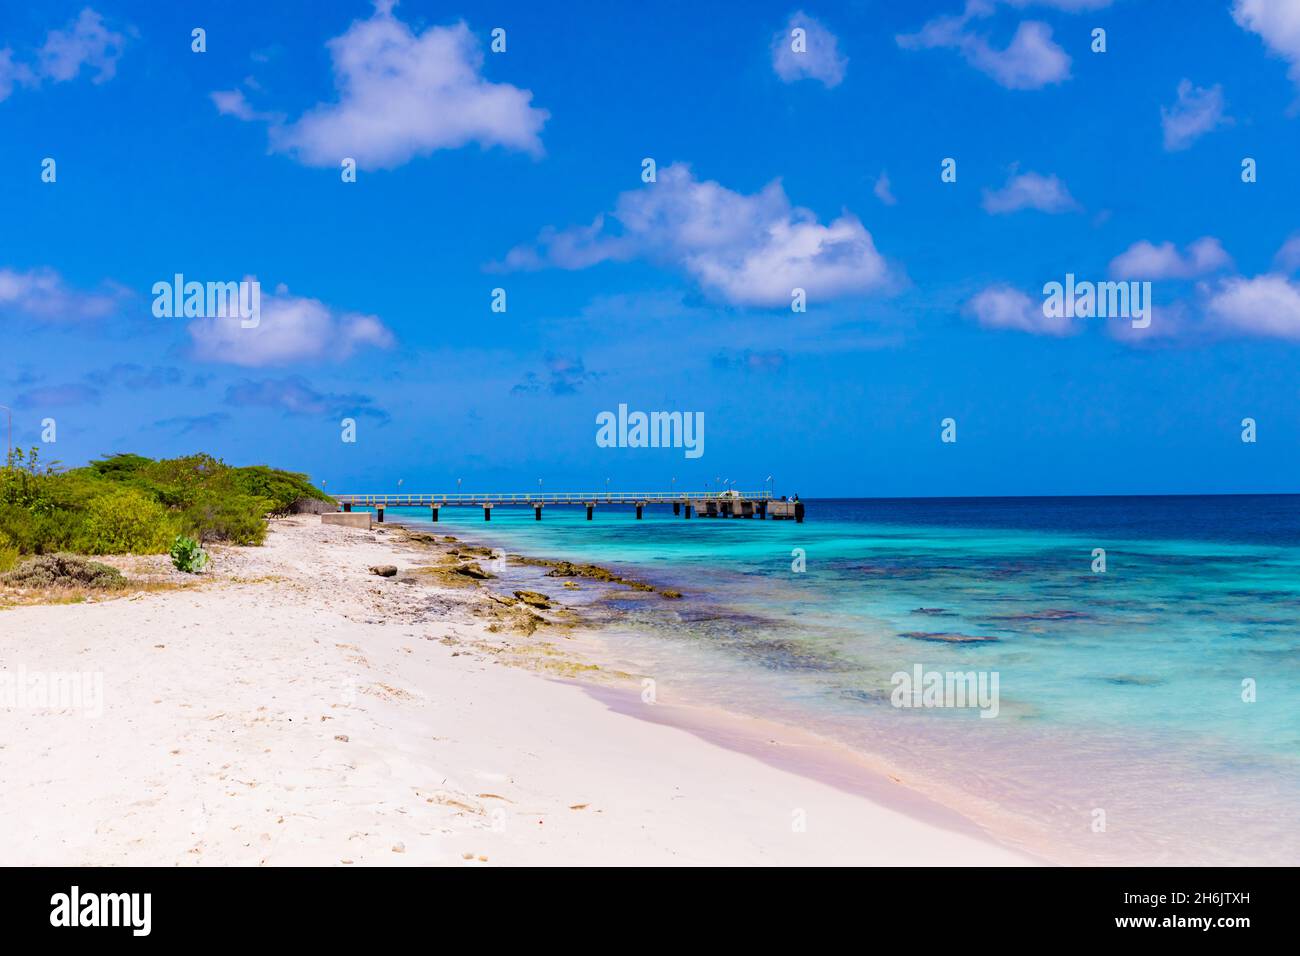 Vue sur les plages de sable blanc et les eaux bleues claires de Bonaire, Antilles néerlandaises, Caraïbes, Amérique centrale Banque D'Images